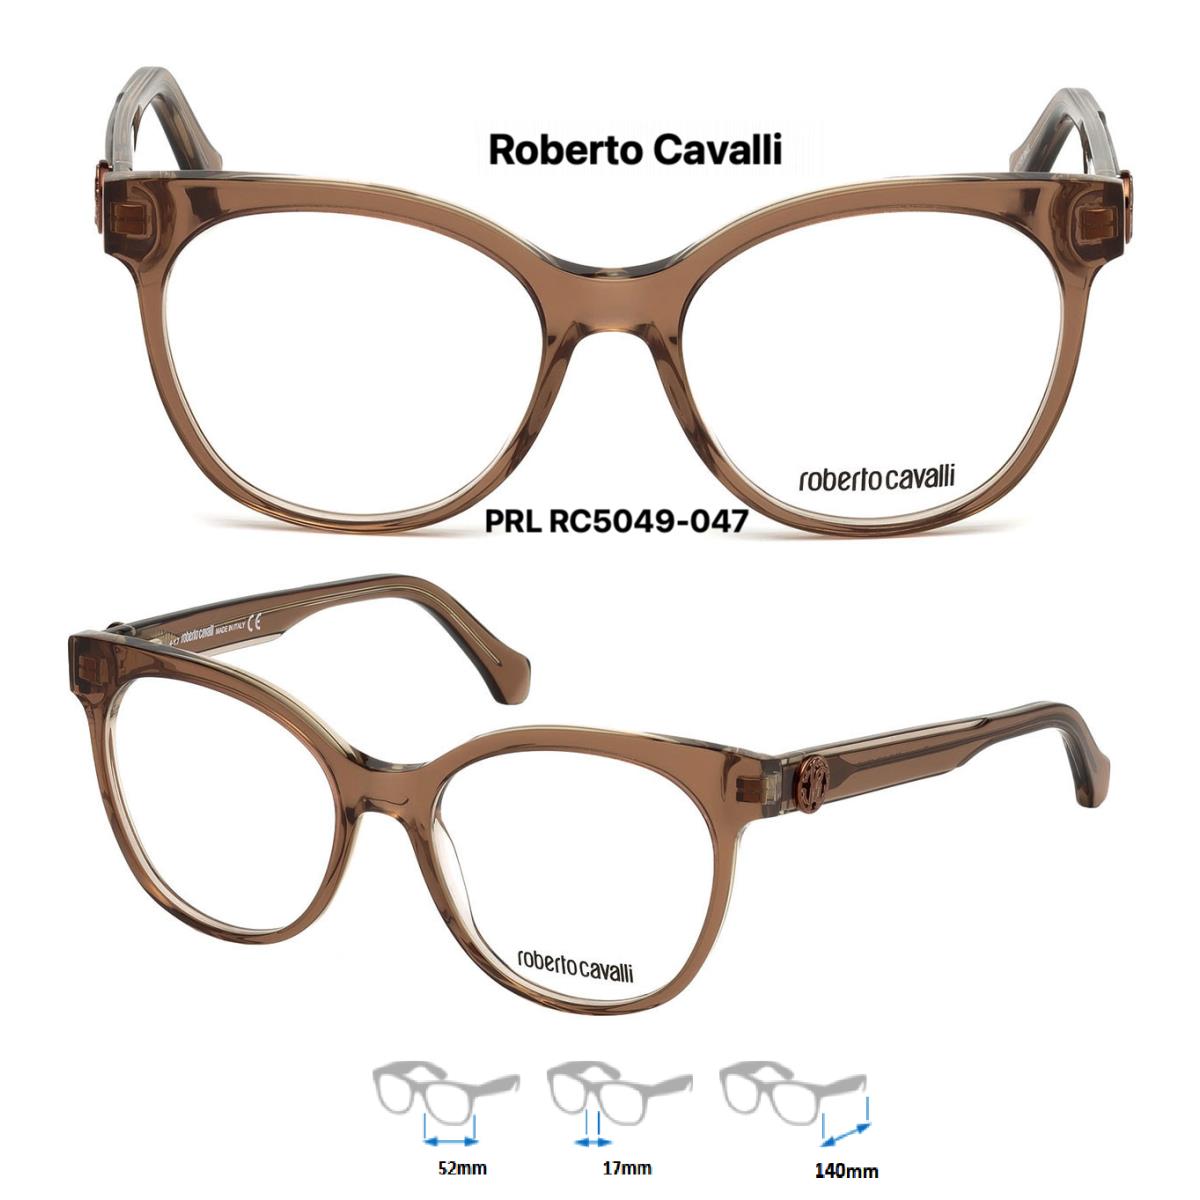 Roberto Cavalli Brand - Shop Roberto Cavalli fashion accessories 